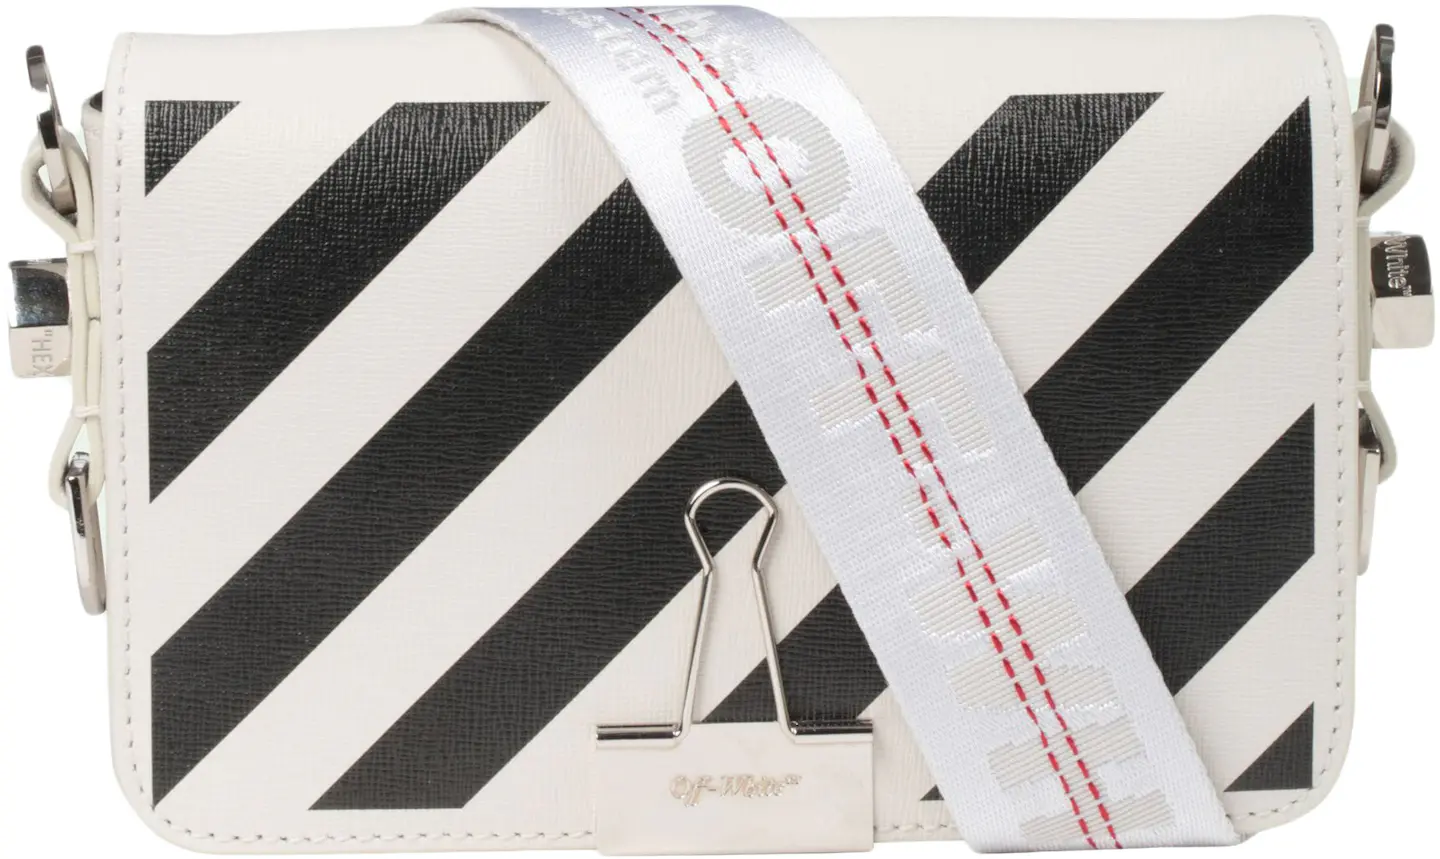 OFF-WHITE Binder Clip Bag Diag Mini Off-White/Black in Saffiano Leather ...